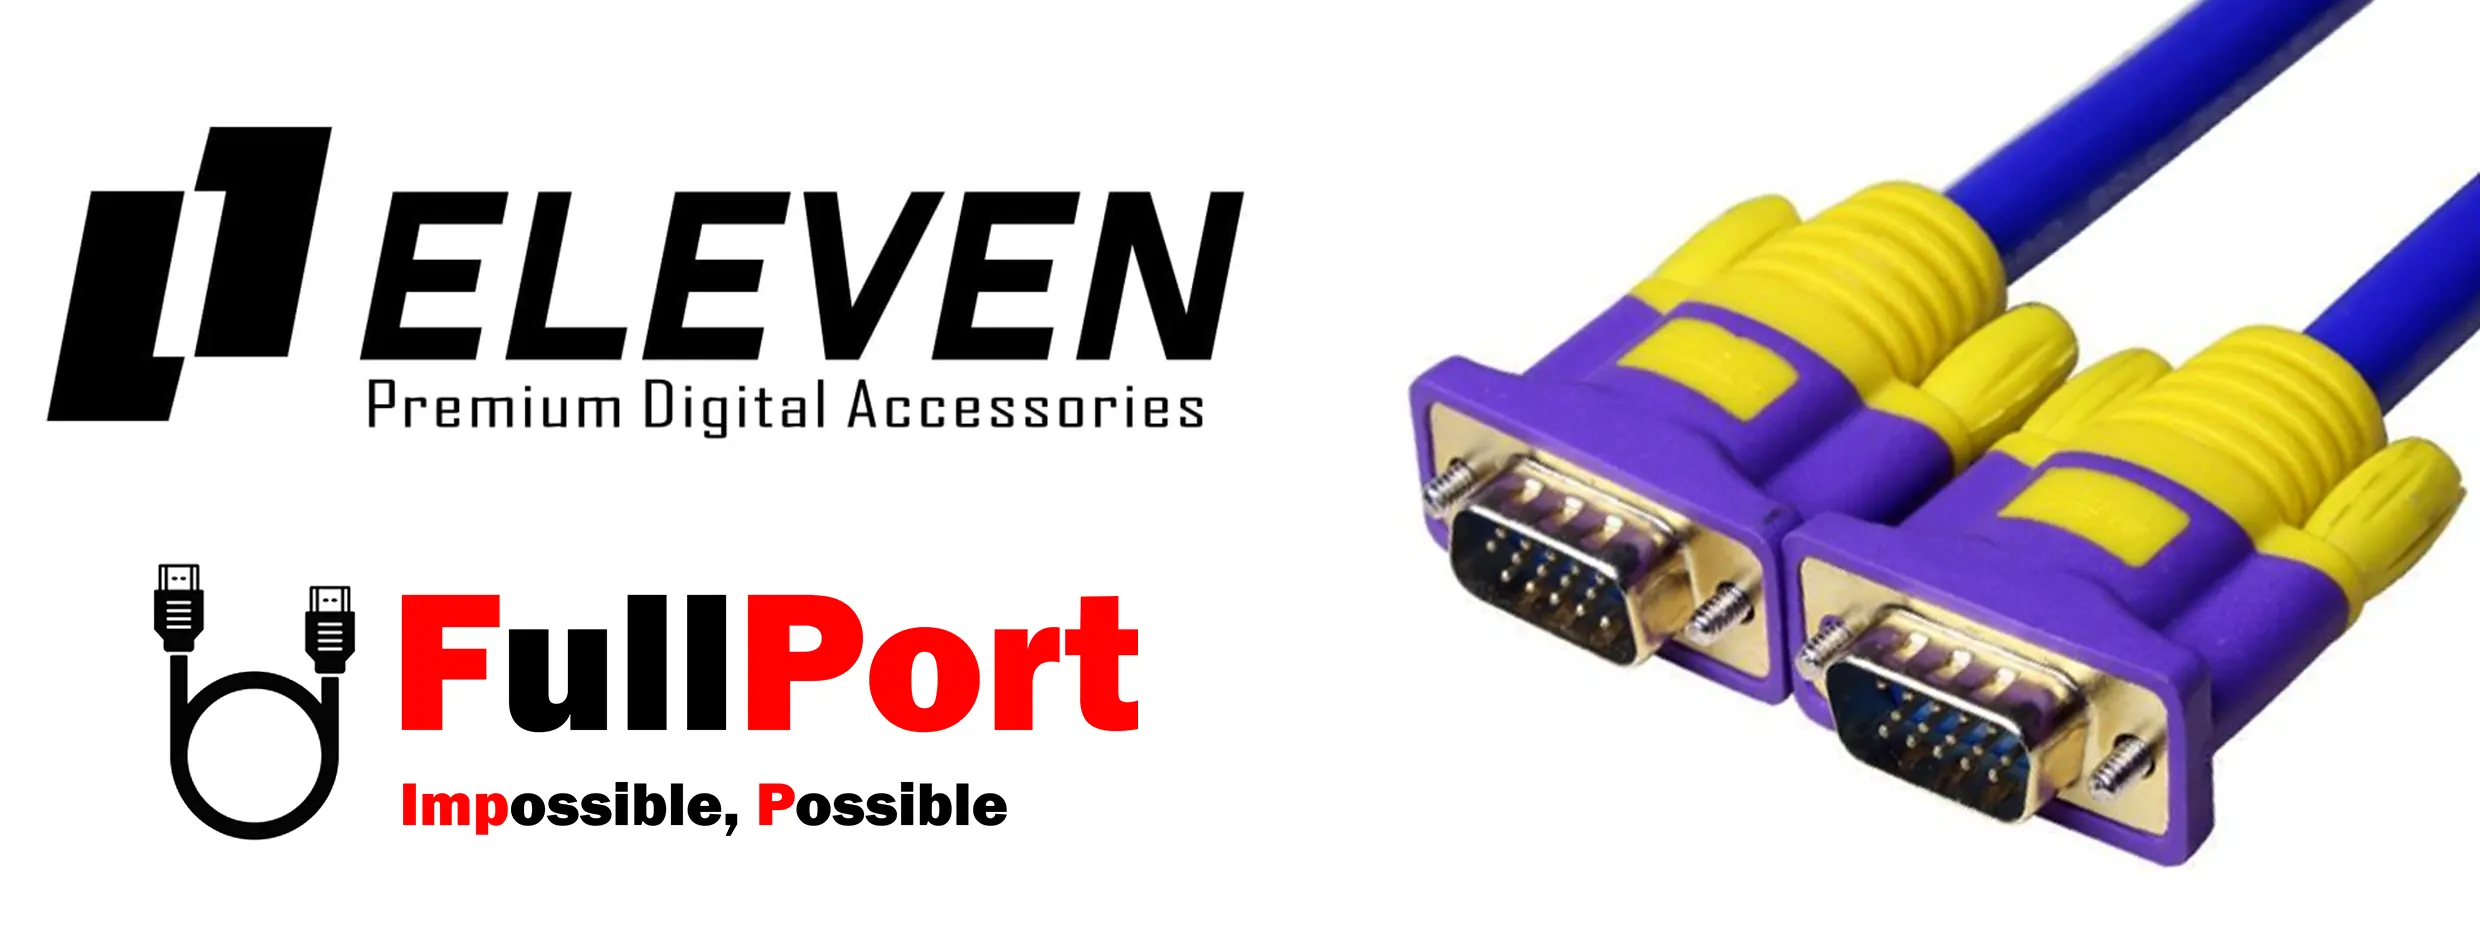 خرید اینترنتی کابل مانیتور VGA برند ایلون | ELEVEN مدل 9+3 از فروشگاه اینترنتی فول پورت